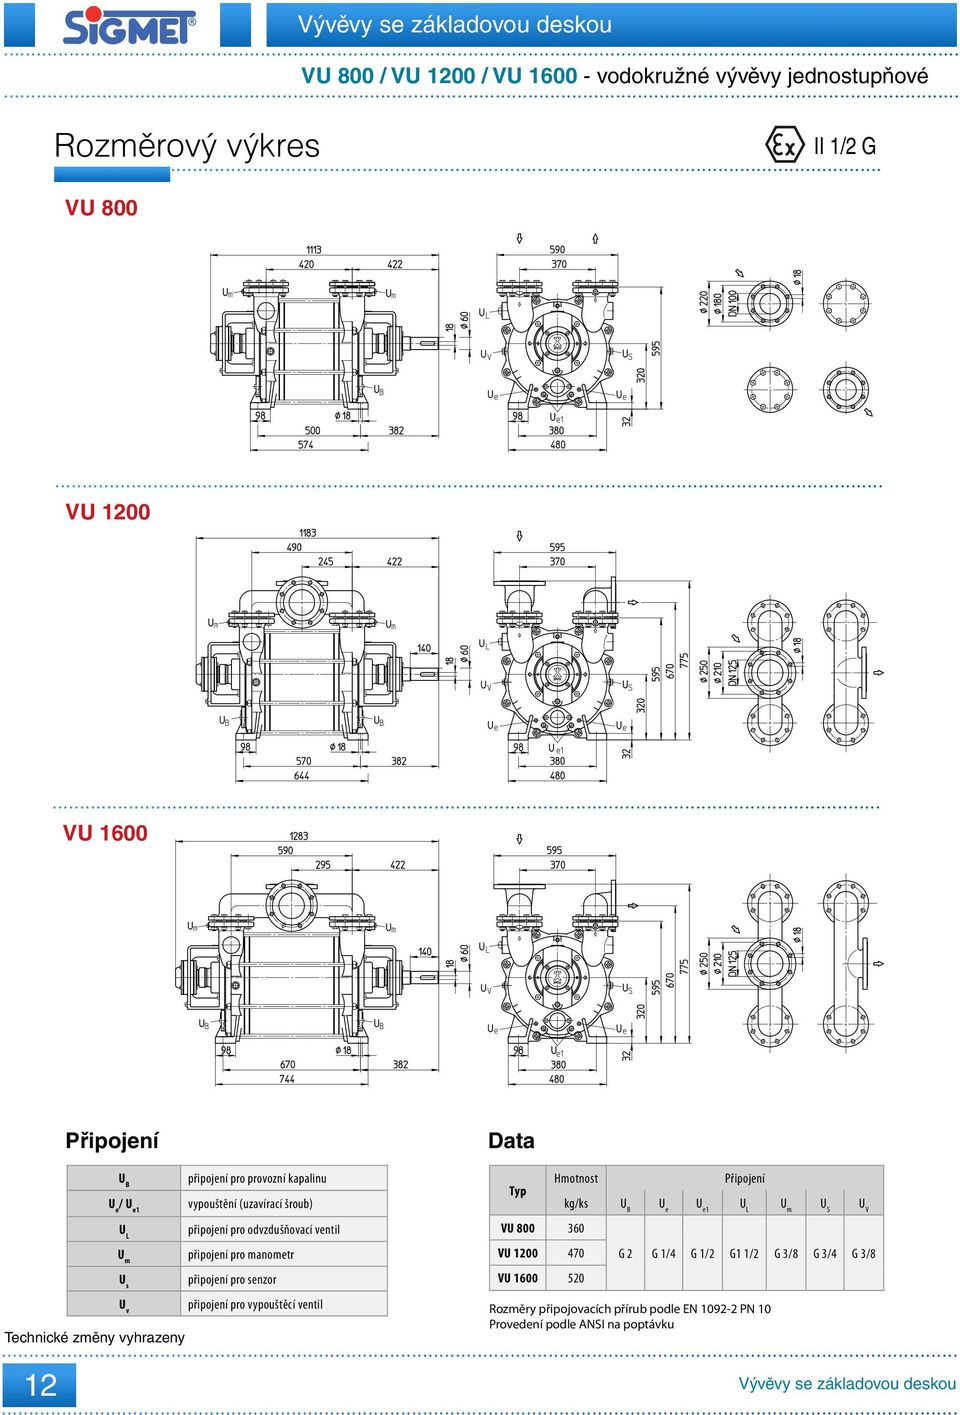 manometr připojení pro senzor připojení pro vypouštěcí ventil Data Typ Hmotnost VU 8 36 VU 12 7 VU 16 52 kg/ks U B U e U e1